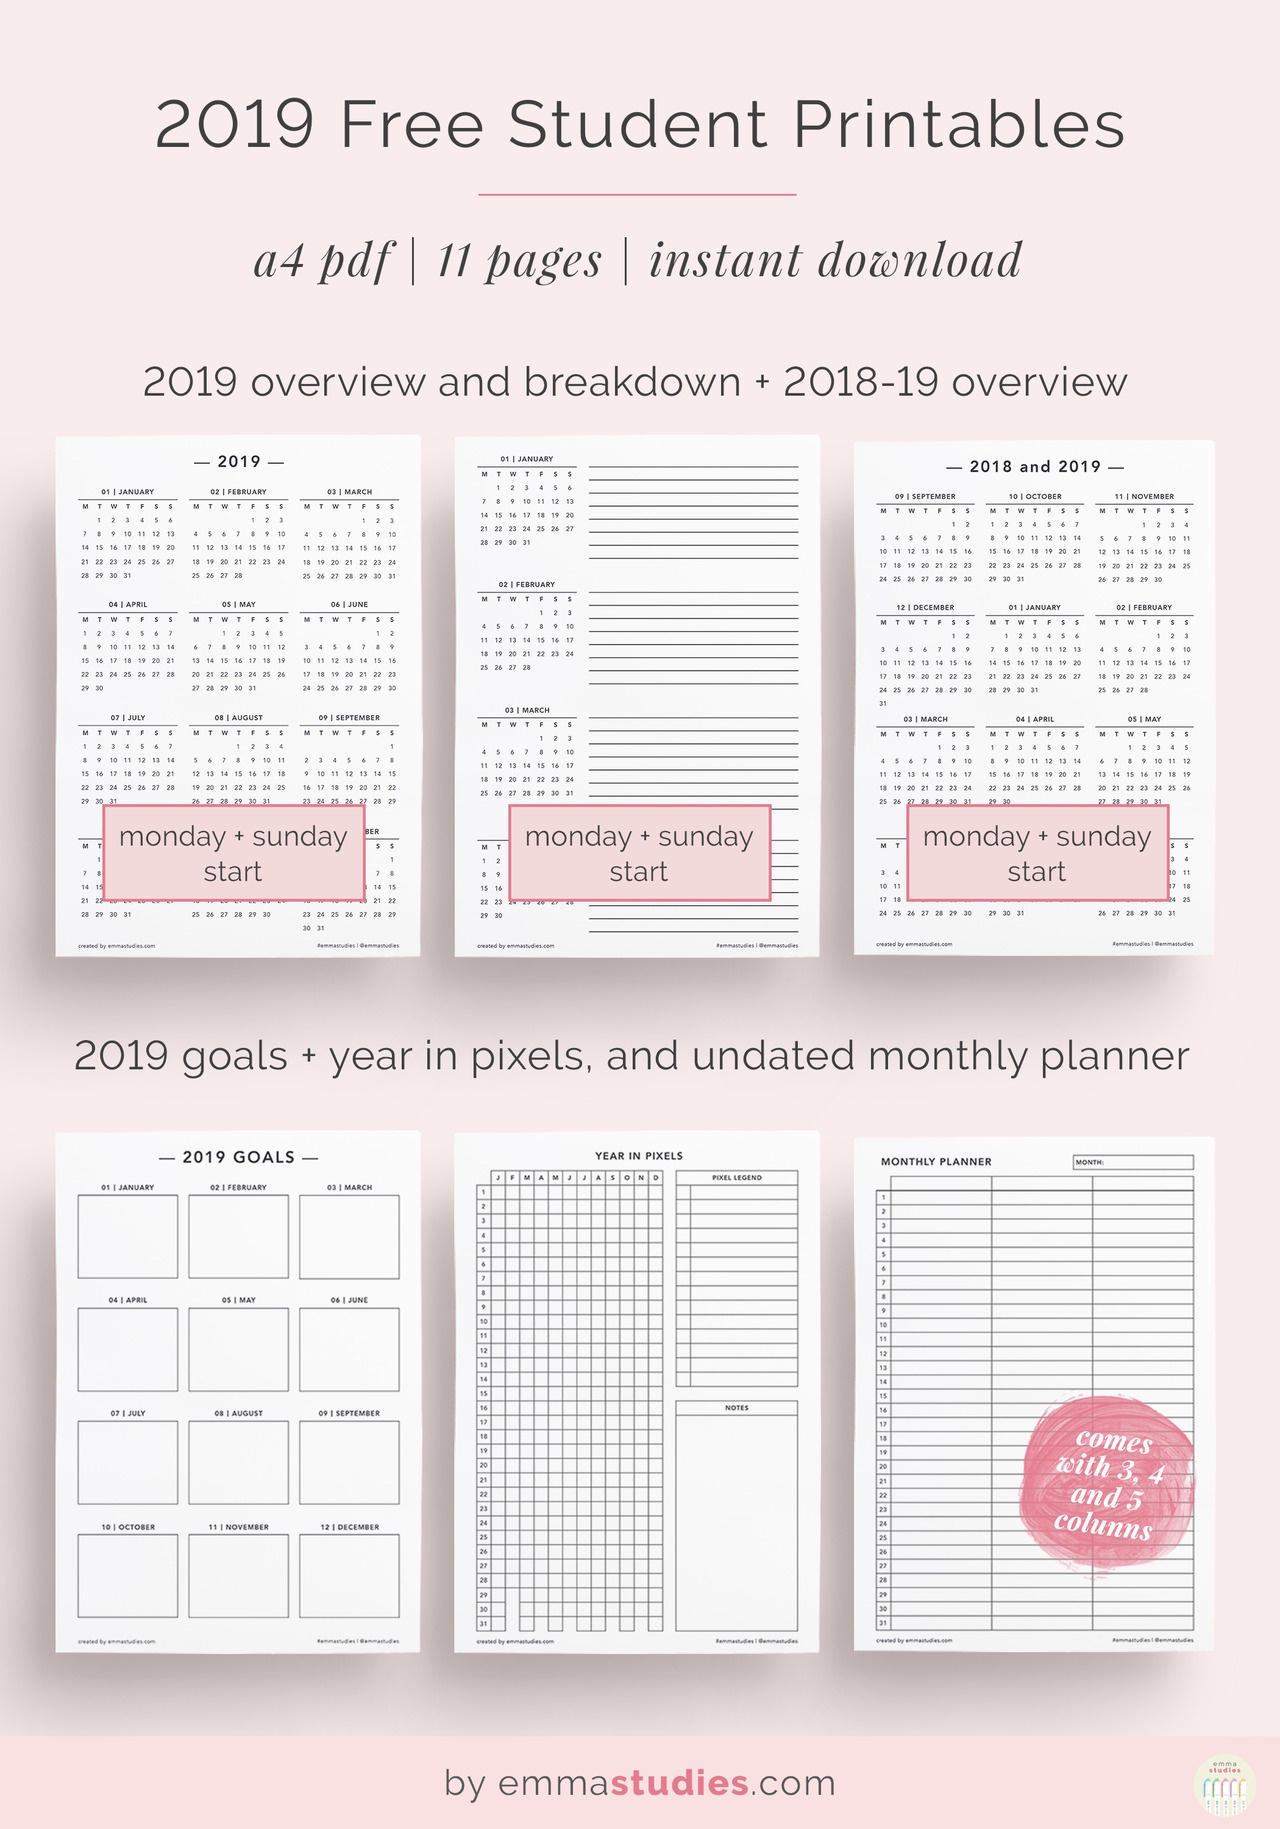 Emma&amp;#039;s Studyblr — 2019 Free Student And Calendar Printables As 2019 - Free Printables 2019